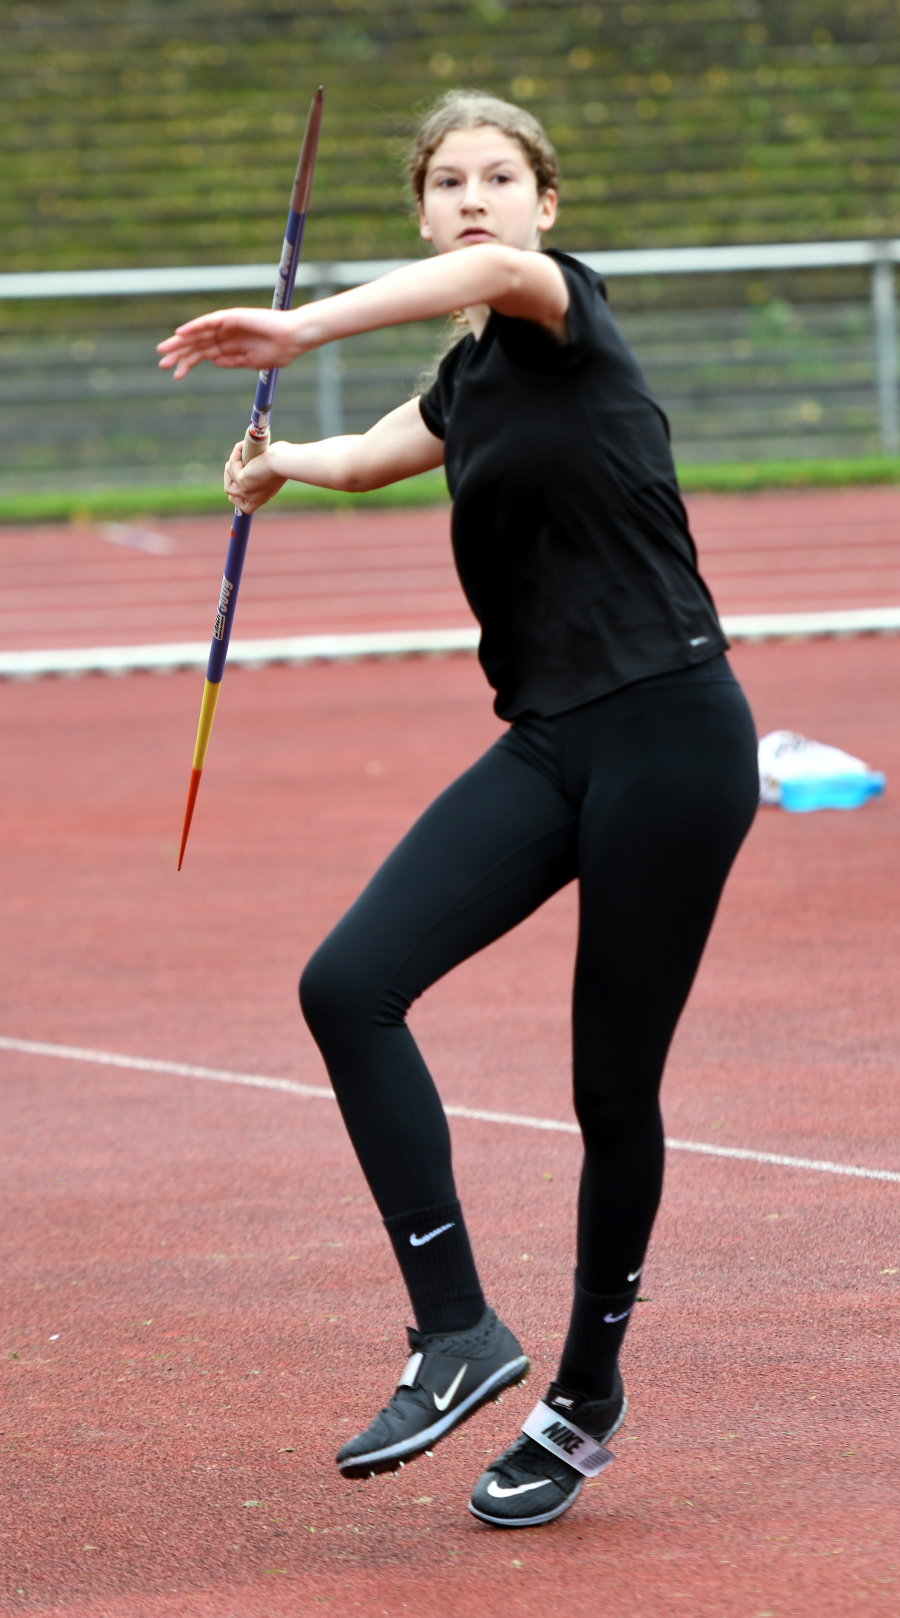 Neue Bestmarke: W15-Sportlerin Gesa Blesken steigerte sich im Speerwurf auf 31,13 Meter. Foto: Bottin